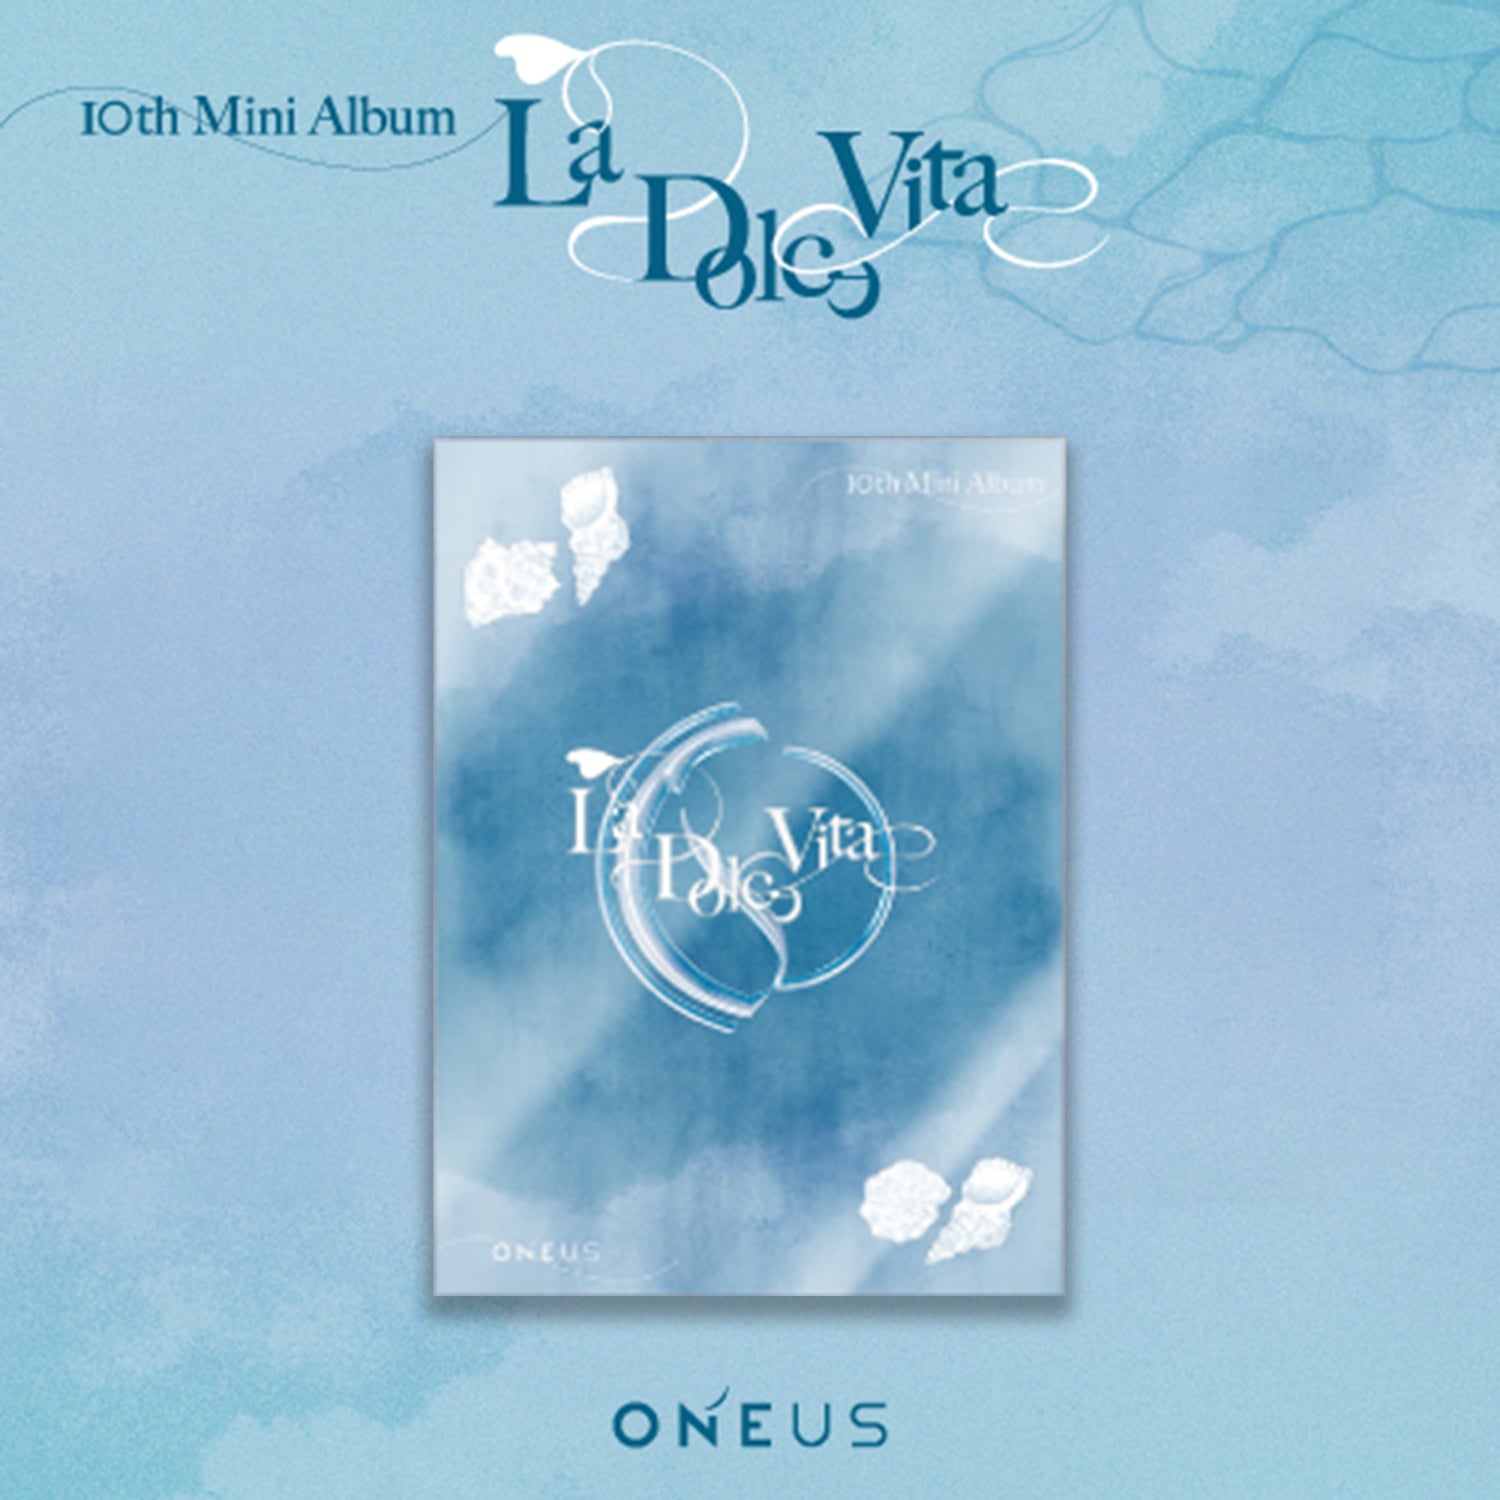 ONEUS - [La Dolce Vita] (10th Mini Album MAIN L Version)